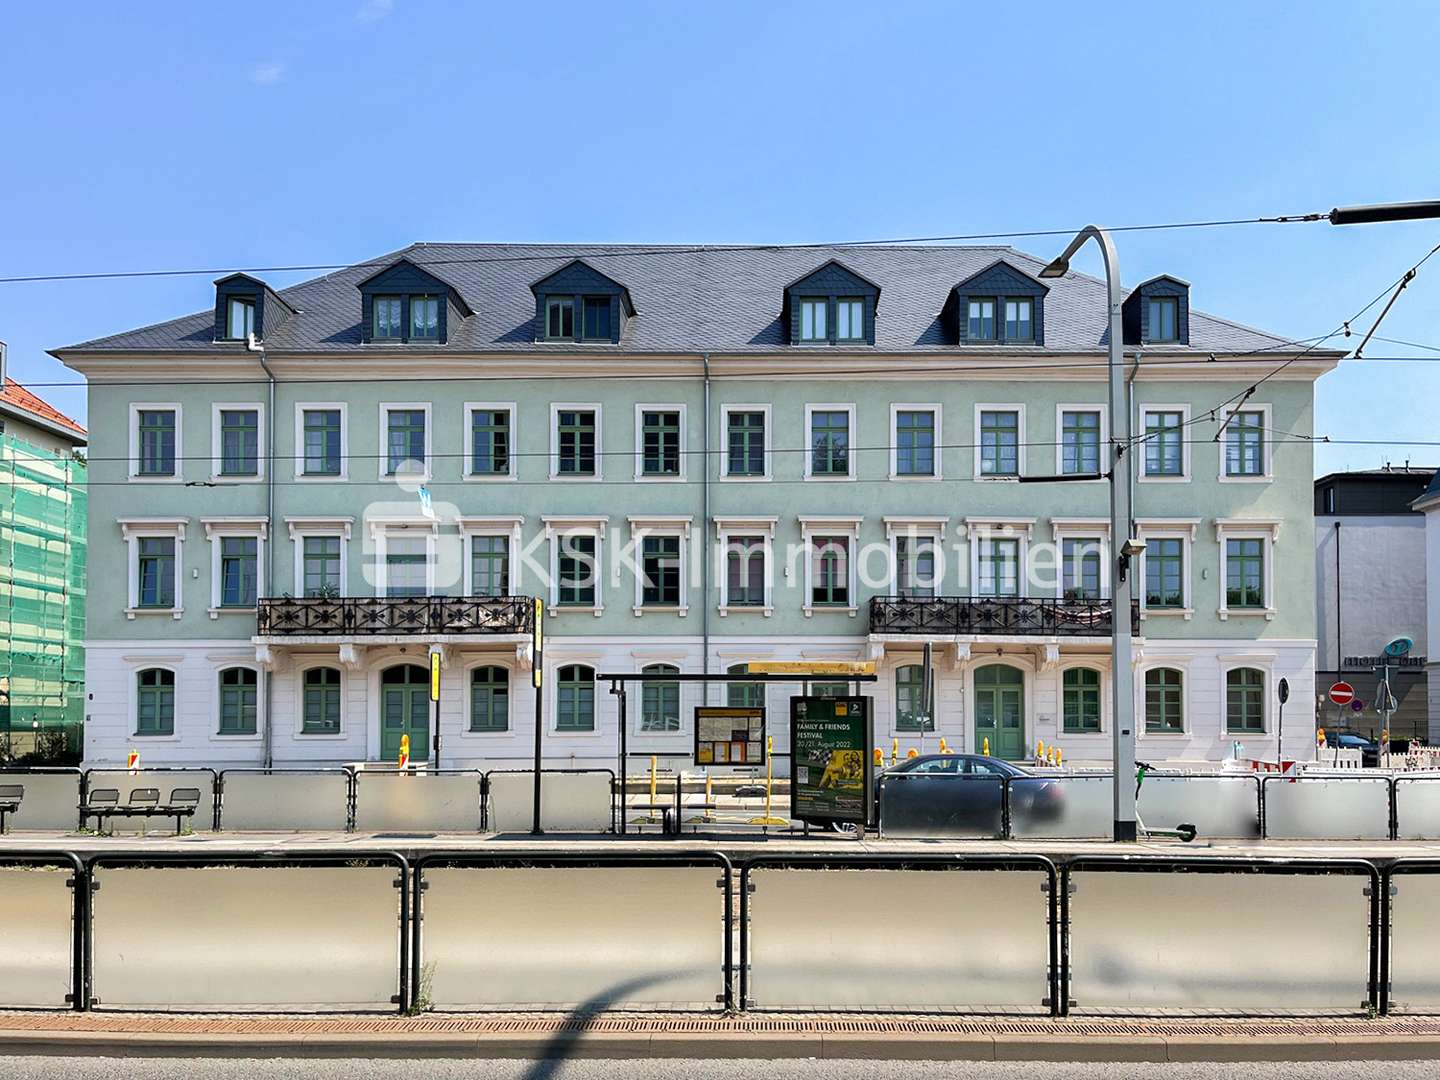 98623 Außenansicht  - Wohn- / Geschäftshaus in 01099 Dresden mit 1037m² als Kapitalanlage günstig kaufen